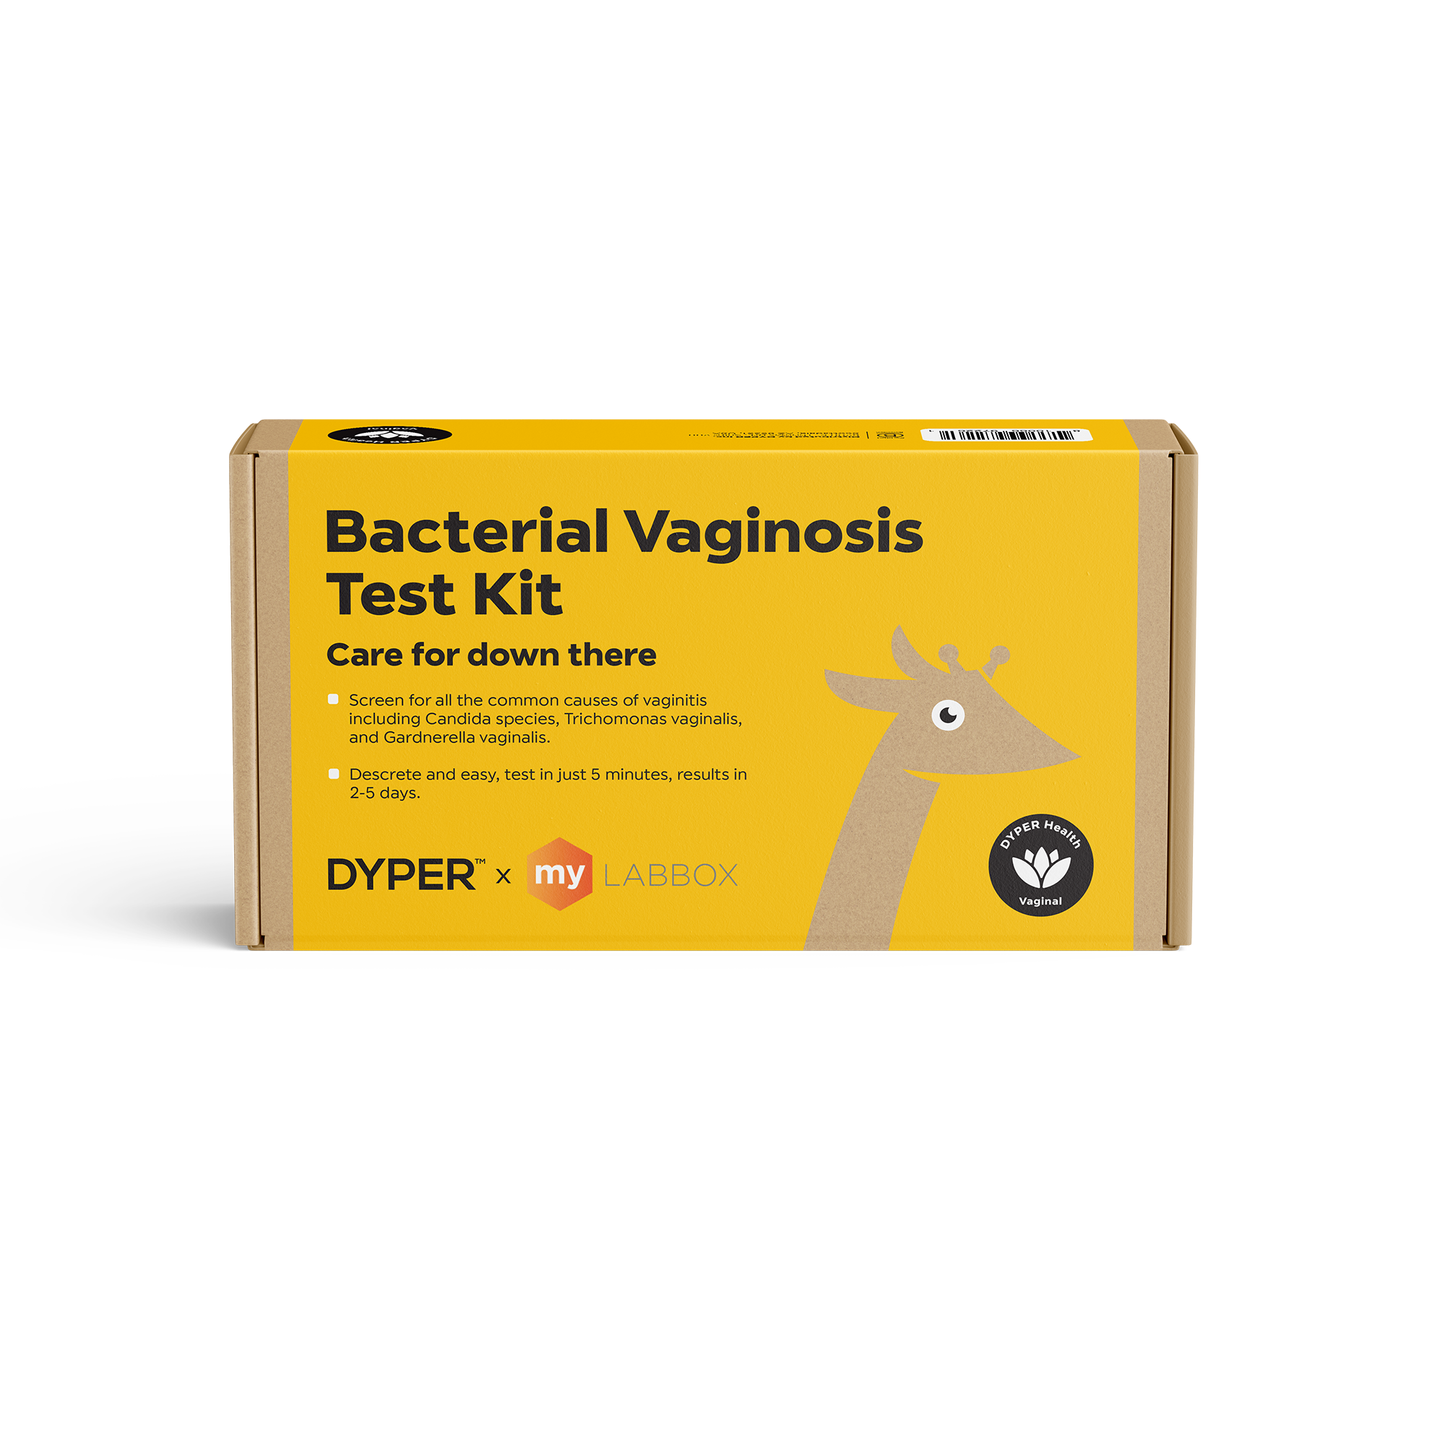 Bacterial Vaginosis (BV) Test Kit